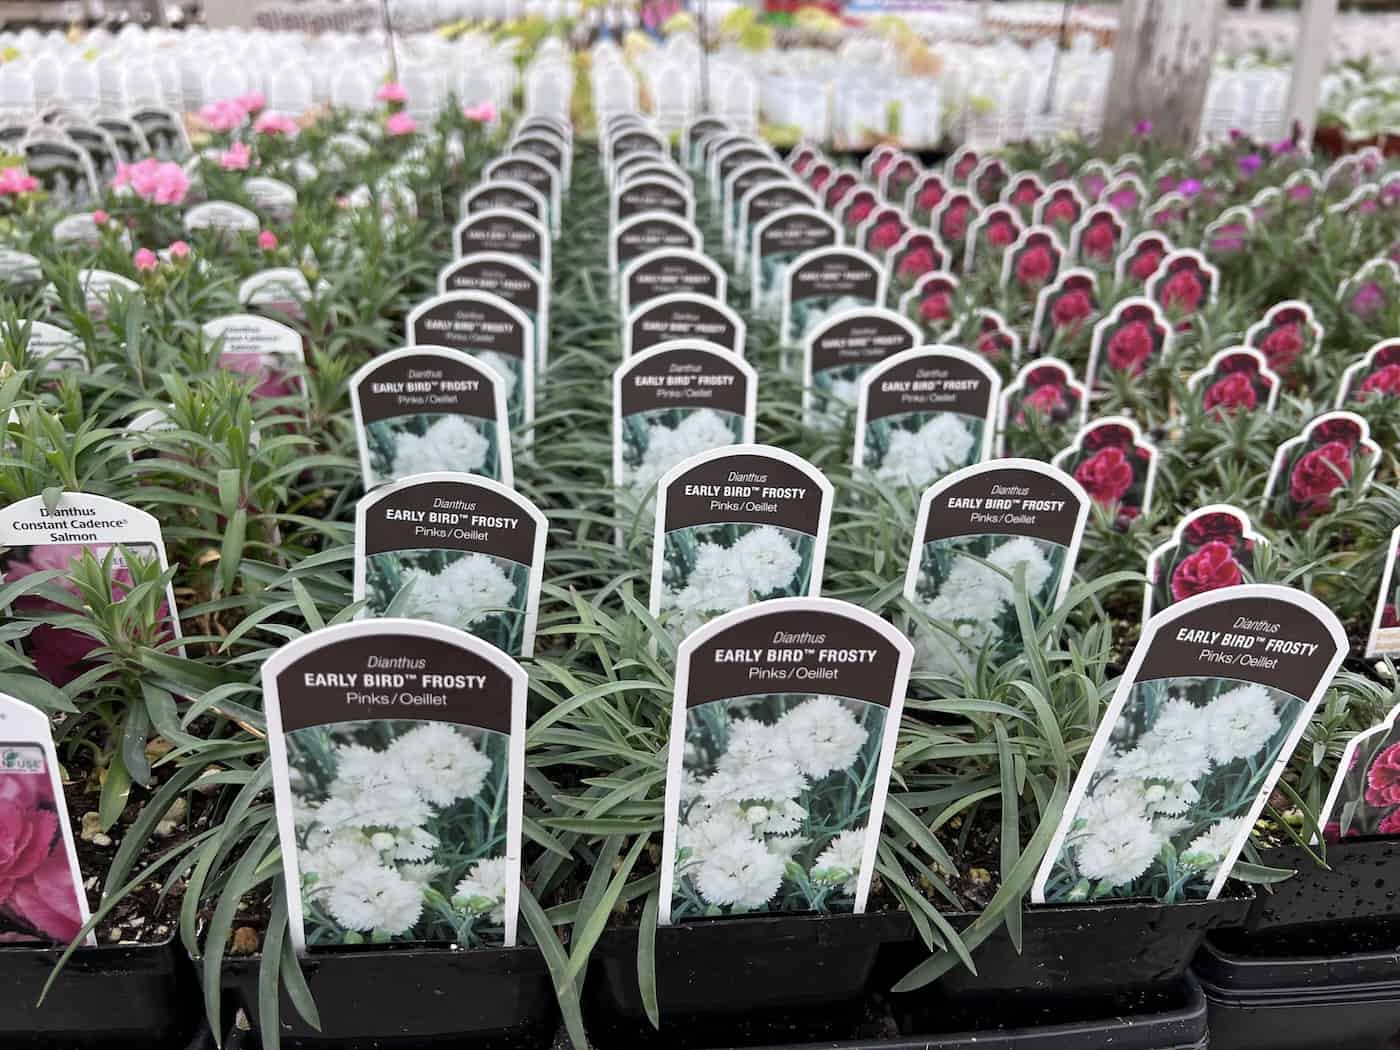 White dianthus plants